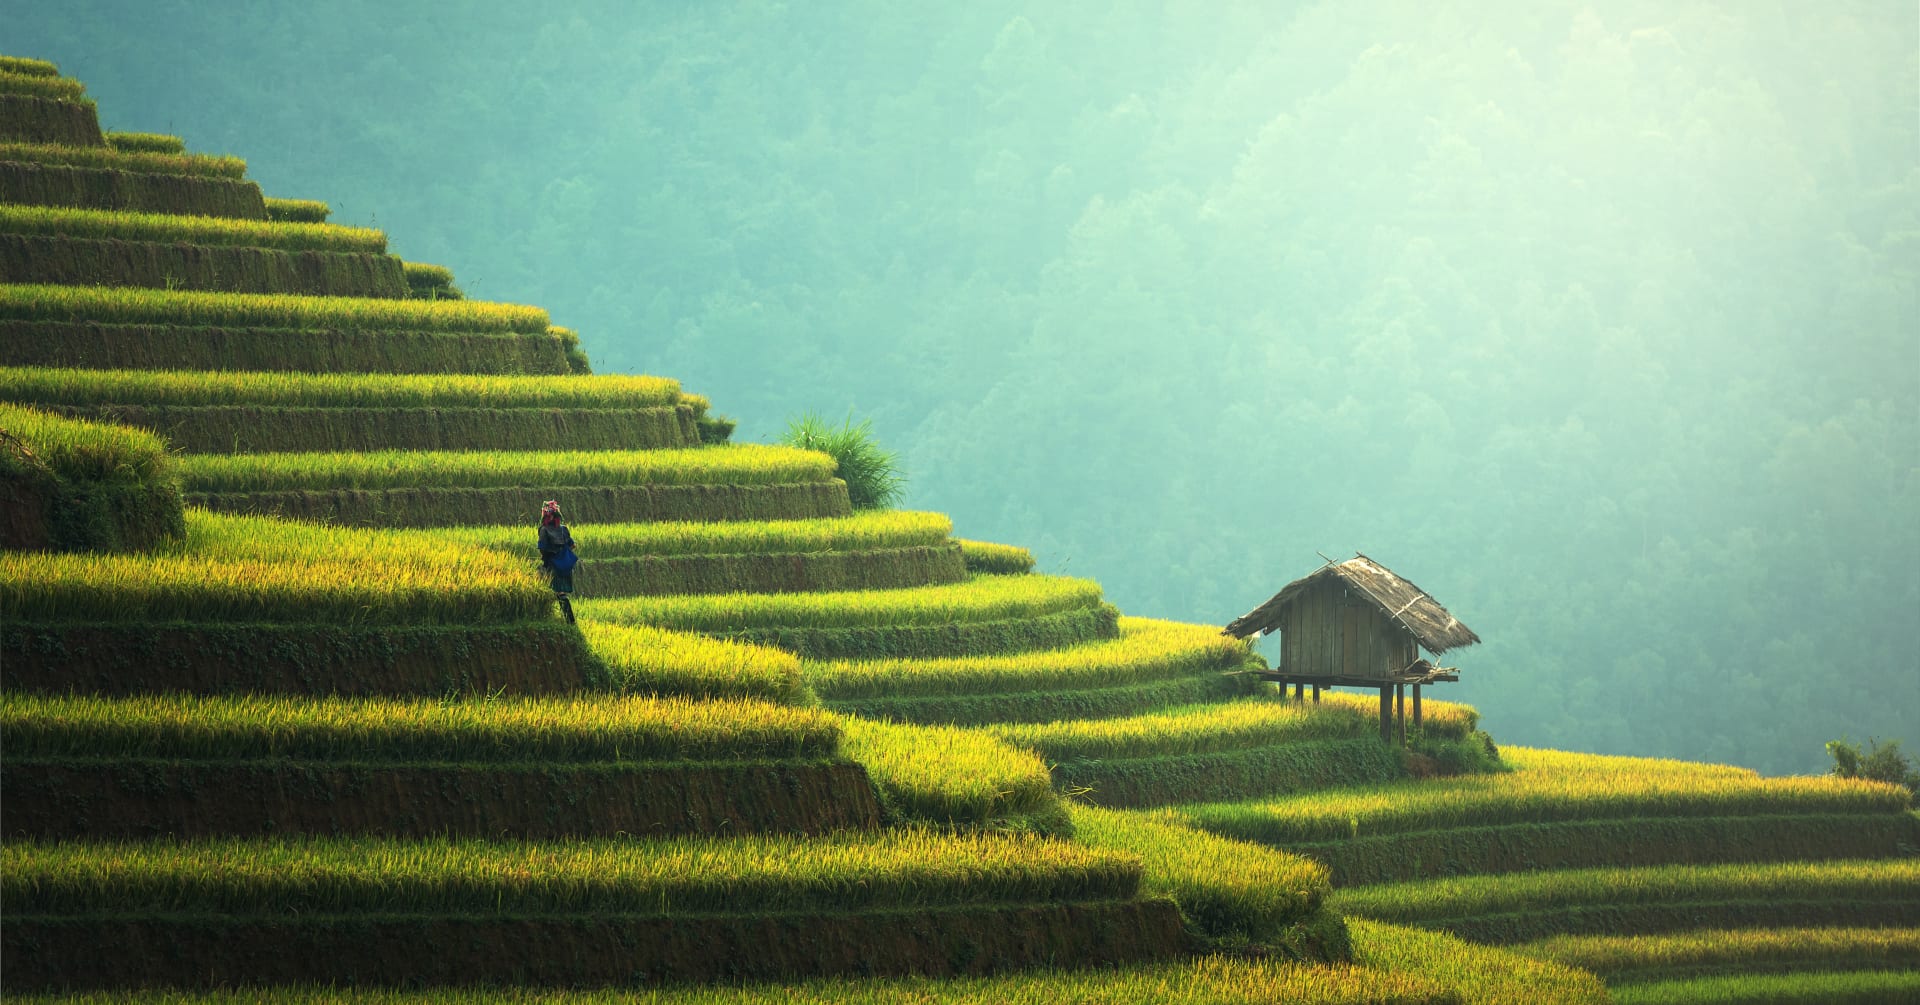 Thailand rice fields 